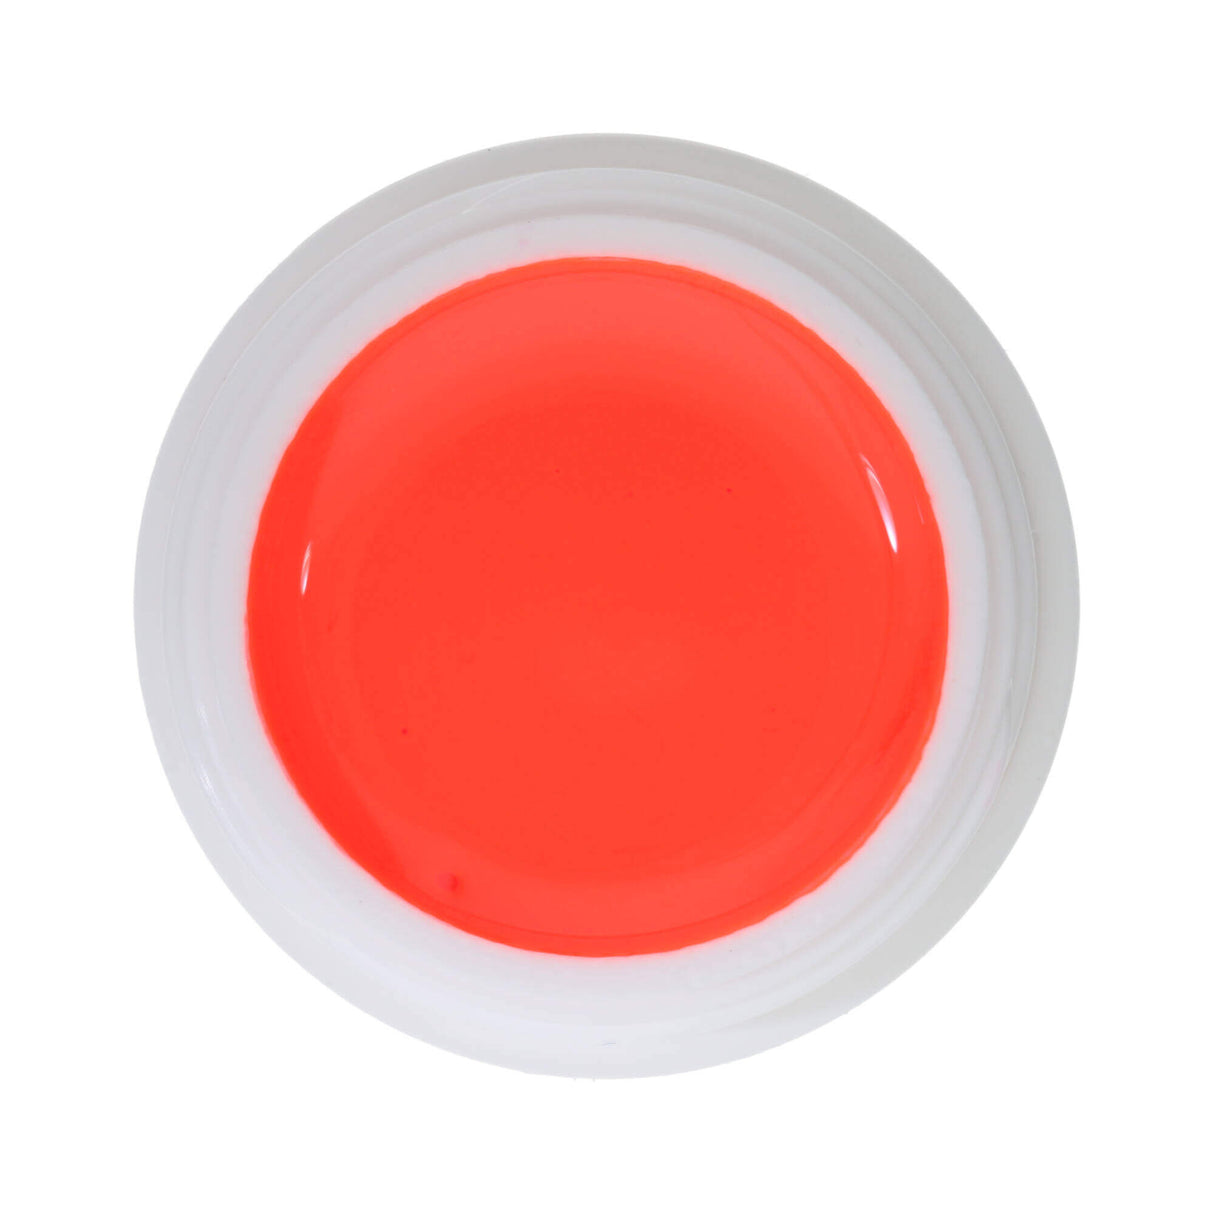 # 565 Premium DECO Color Gel 5ml Neon PAS POUR USAGE COSMETIQUE